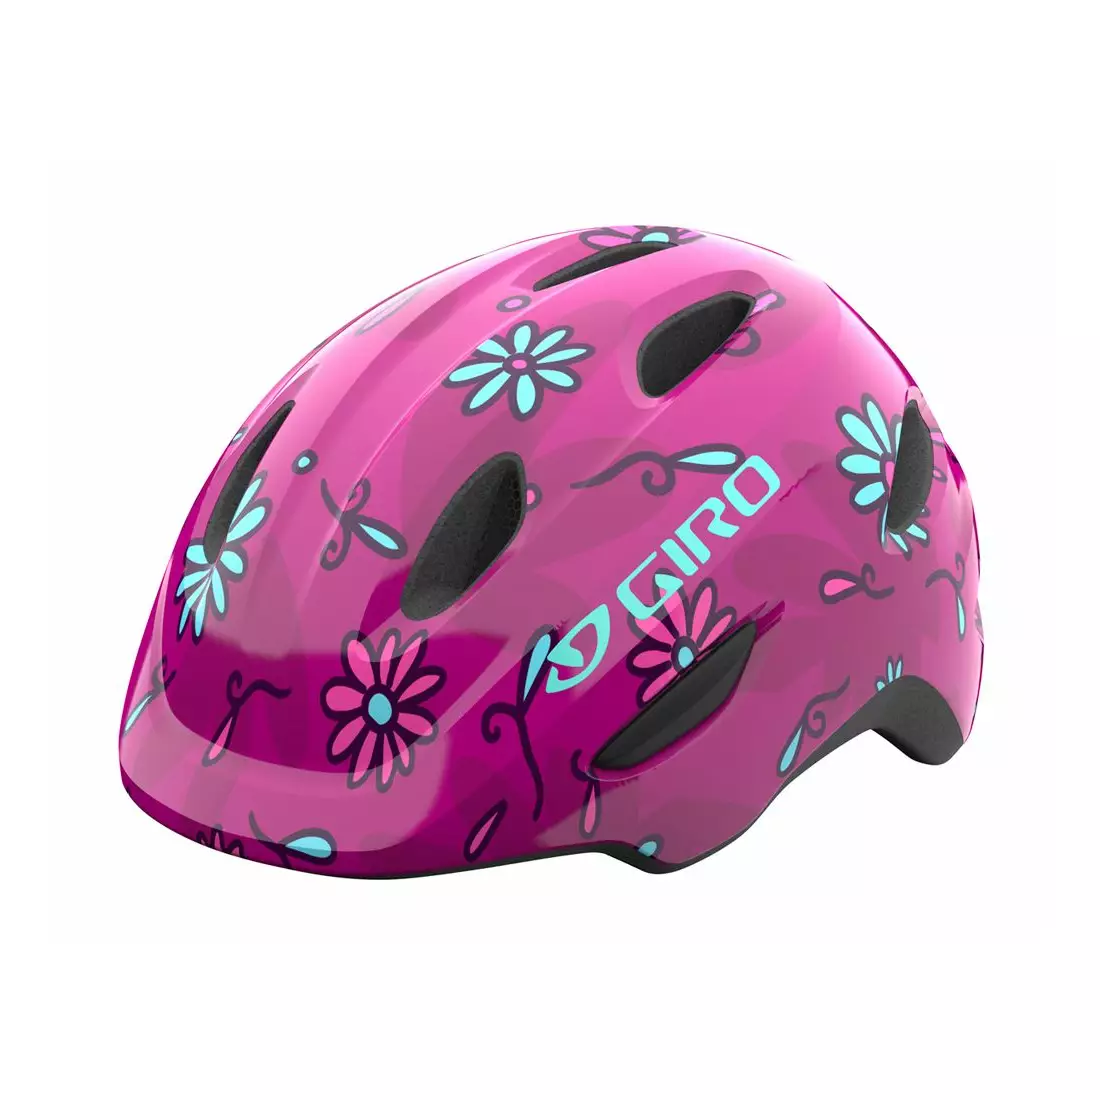 GIRO dětská / juniorská cyklistická přilba SCAMP pink street sugar daisies GR-7129847